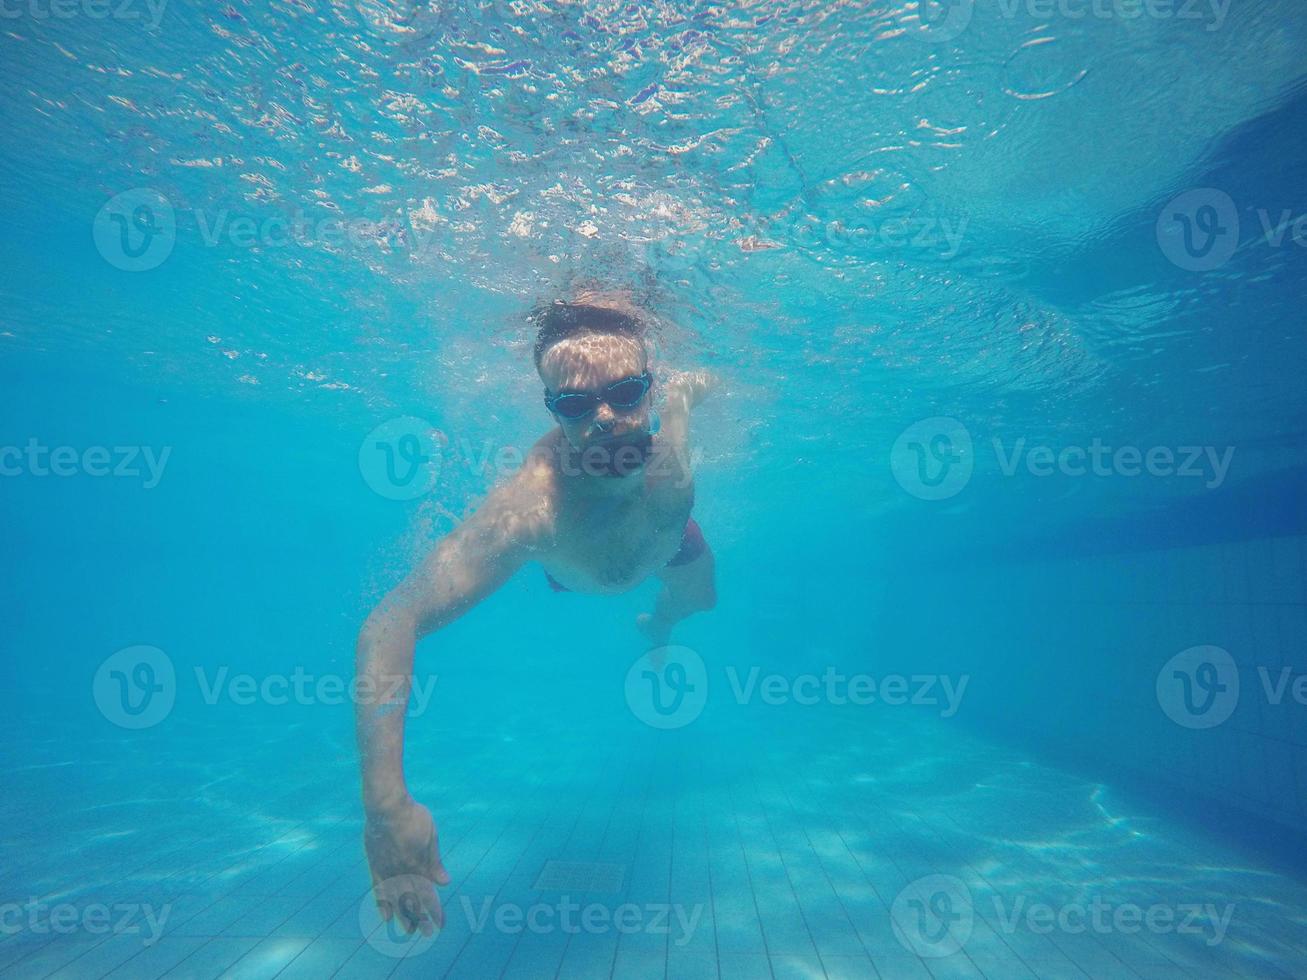 barba hombre con lentes nadando debajo agua en el piscina foto